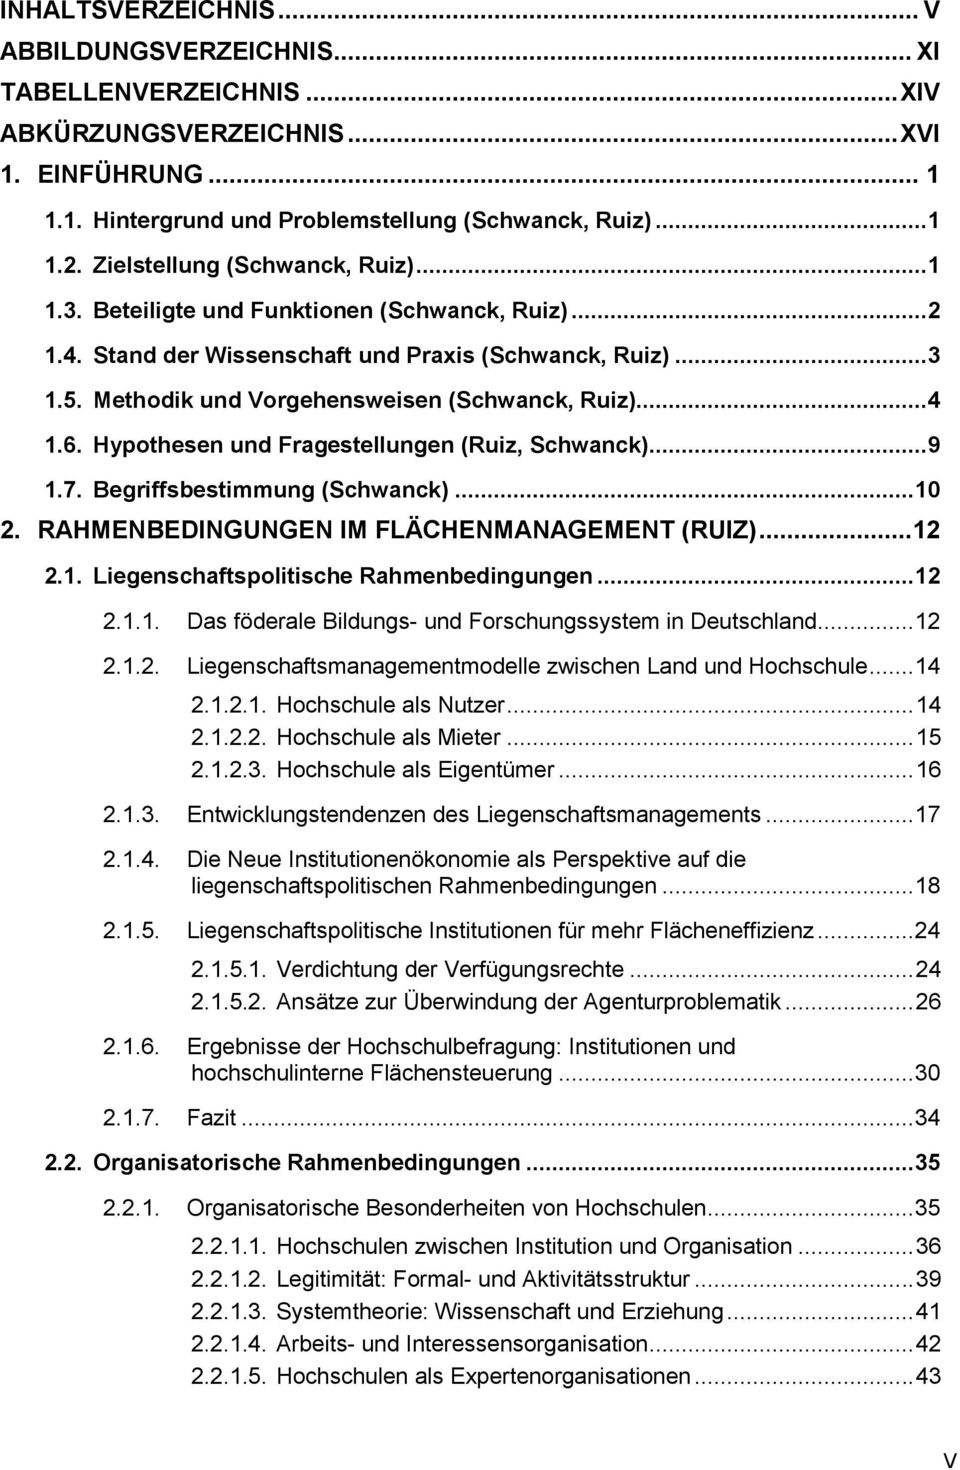 ..4 1.6. Hypothesen und Fragestellungen (Ruiz, Schwanck)...9 1.7. Begriffsbestimmung (Schwanck)... 10 2. RAHMENBEDINGUNGEN IM FLÄCHENMANAGEMENT (RUIZ)...12 2.1. Liegenschaftspolitische Rahmenbedingungen.